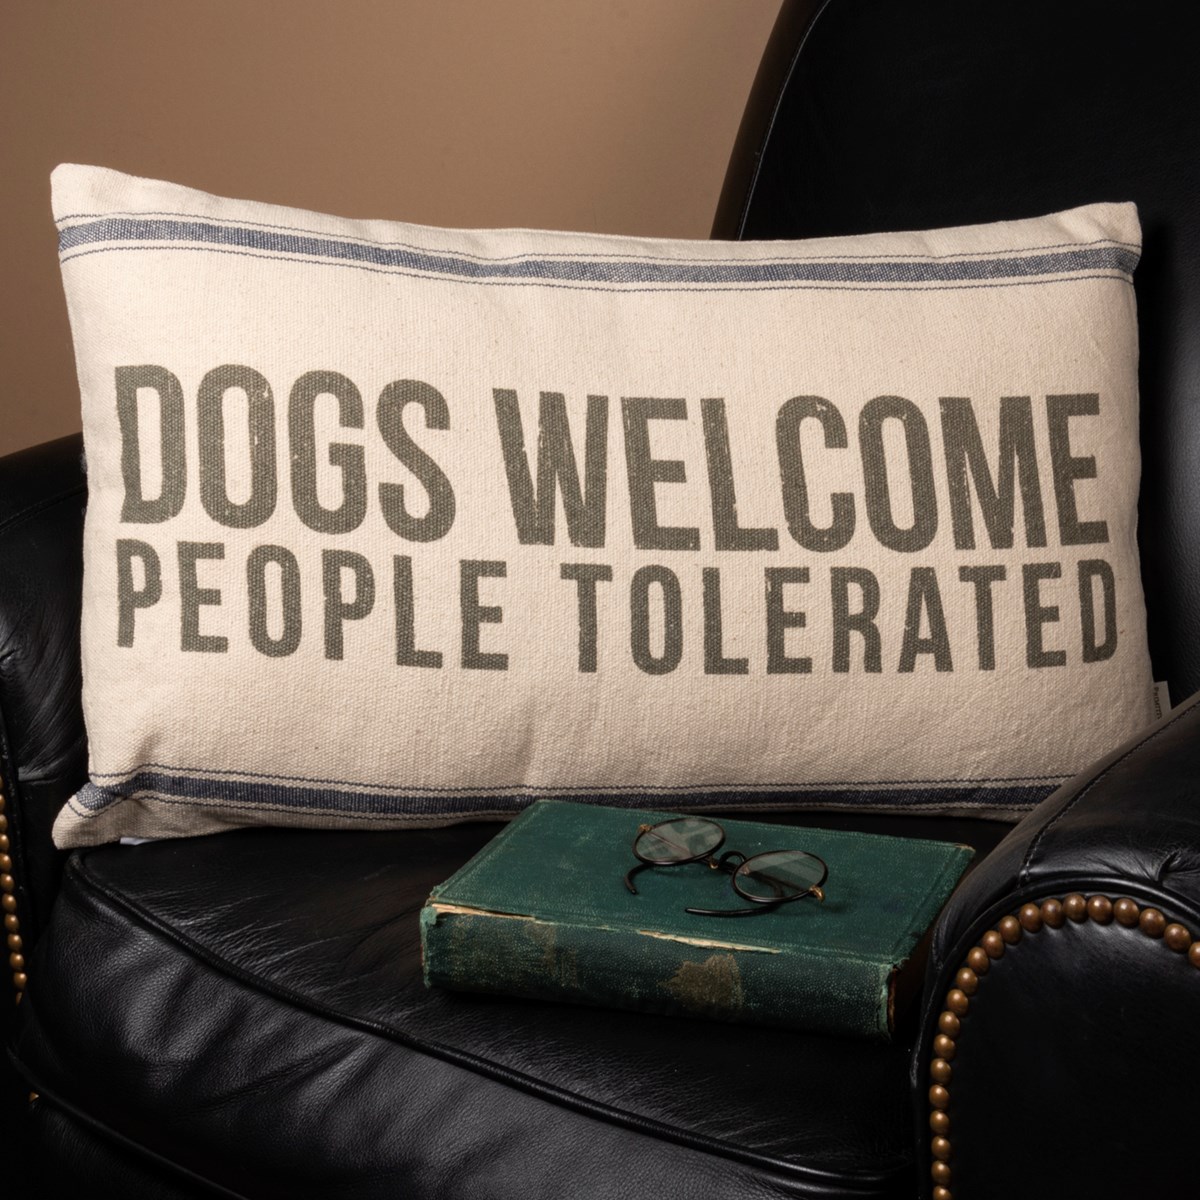 Dogs Welcome Pillow - Cotton, Zipper